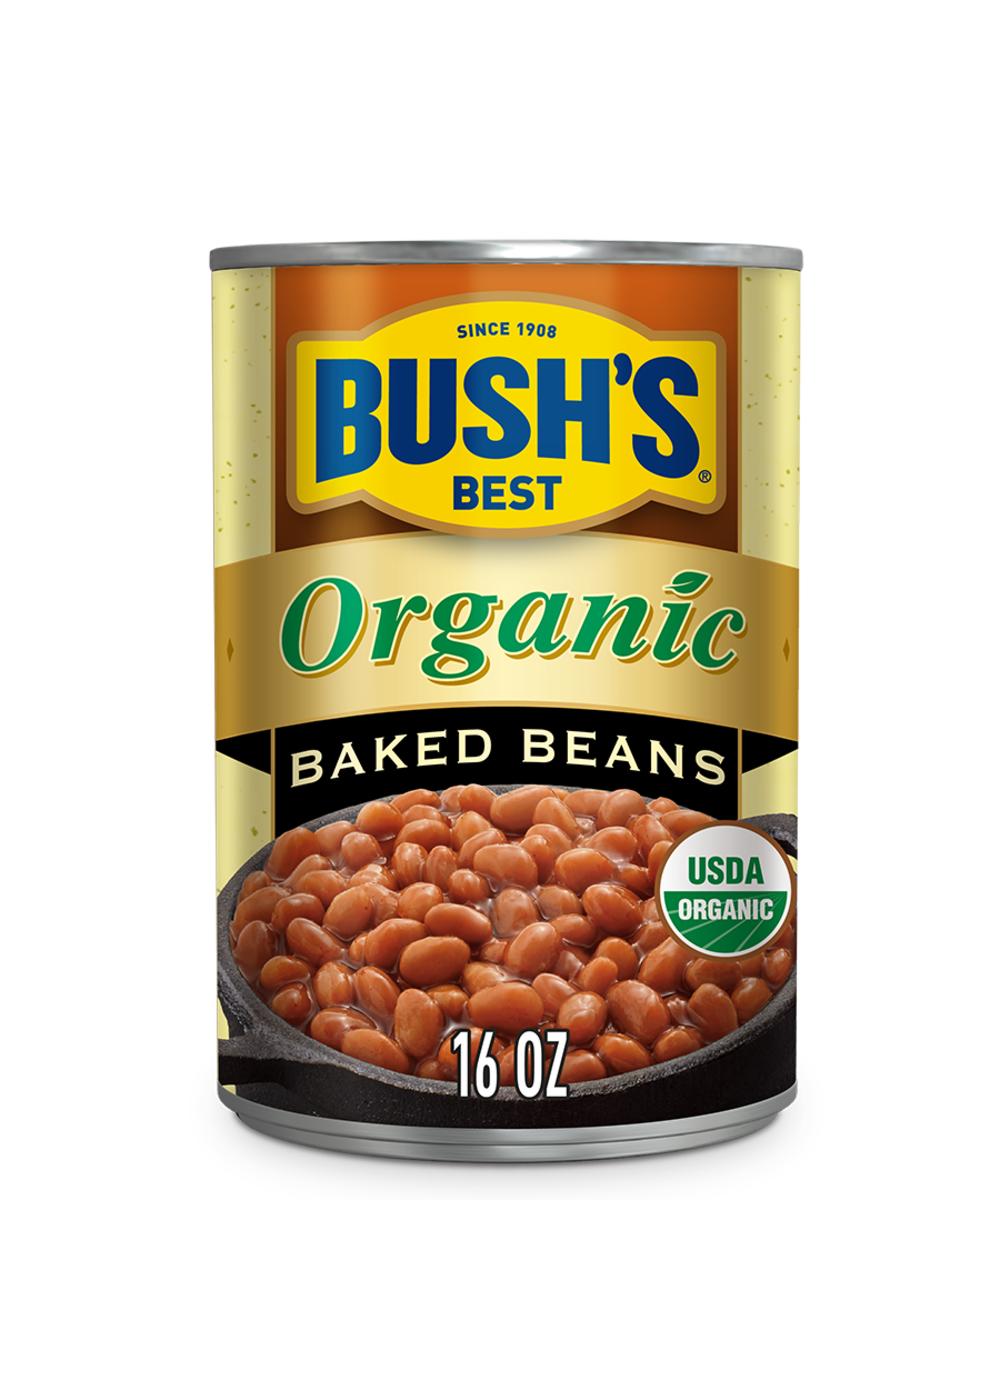 Bush's Best Organic Baked Beans; image 1 of 4